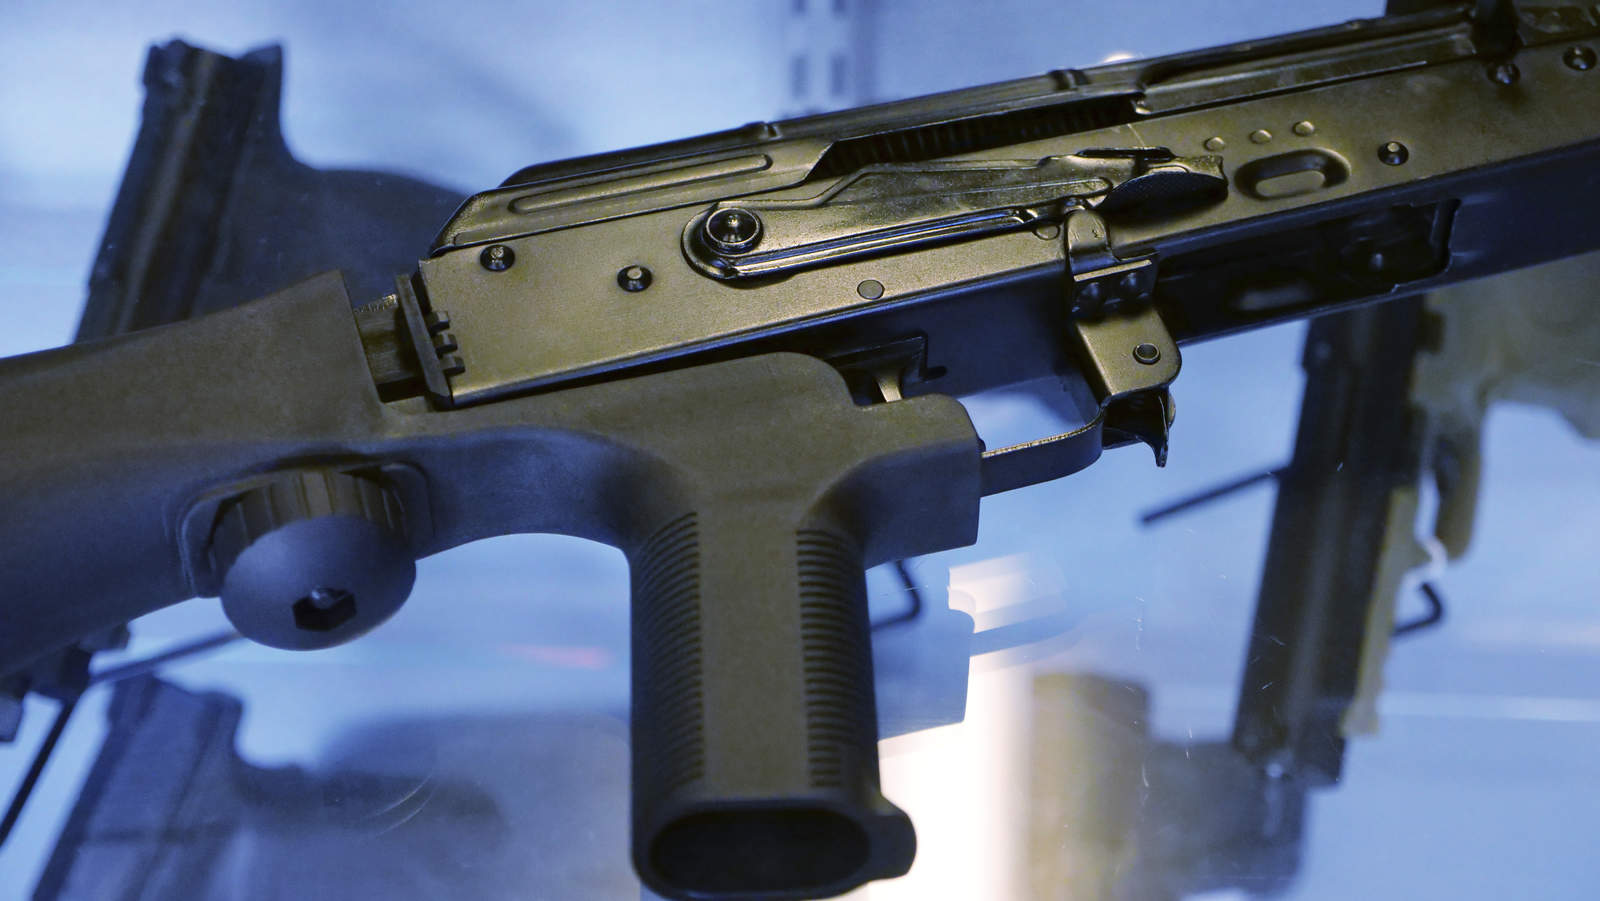 Prohibirá de manera oficial al 'bump stock', accesorio que permite que armas semiautomáticas puedan disparar como armas automáticas. (AP)